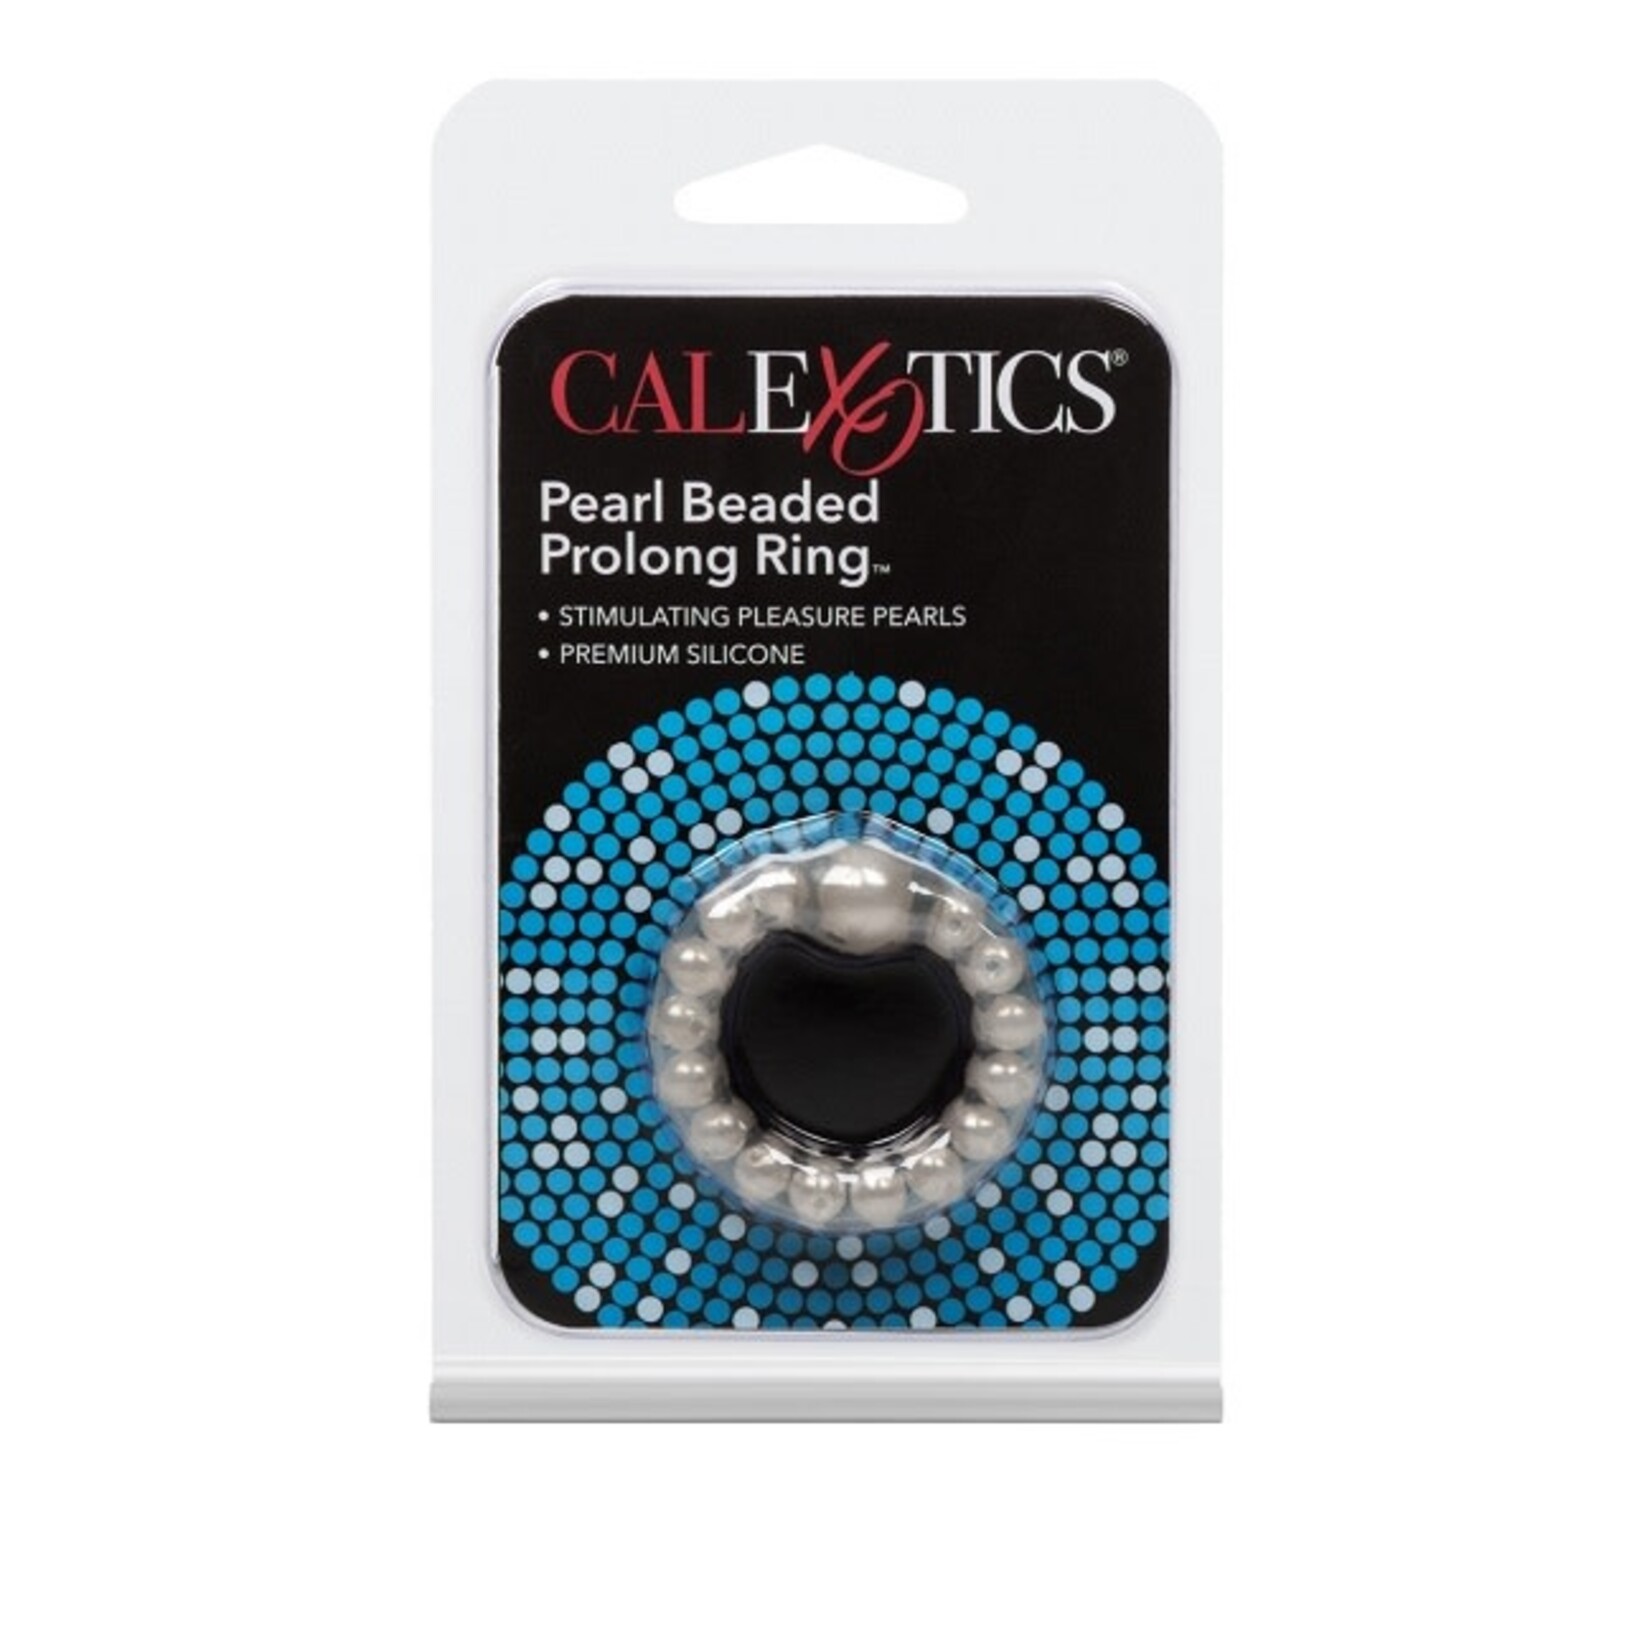 CalExotics Pearl Beaded Prolong Ring